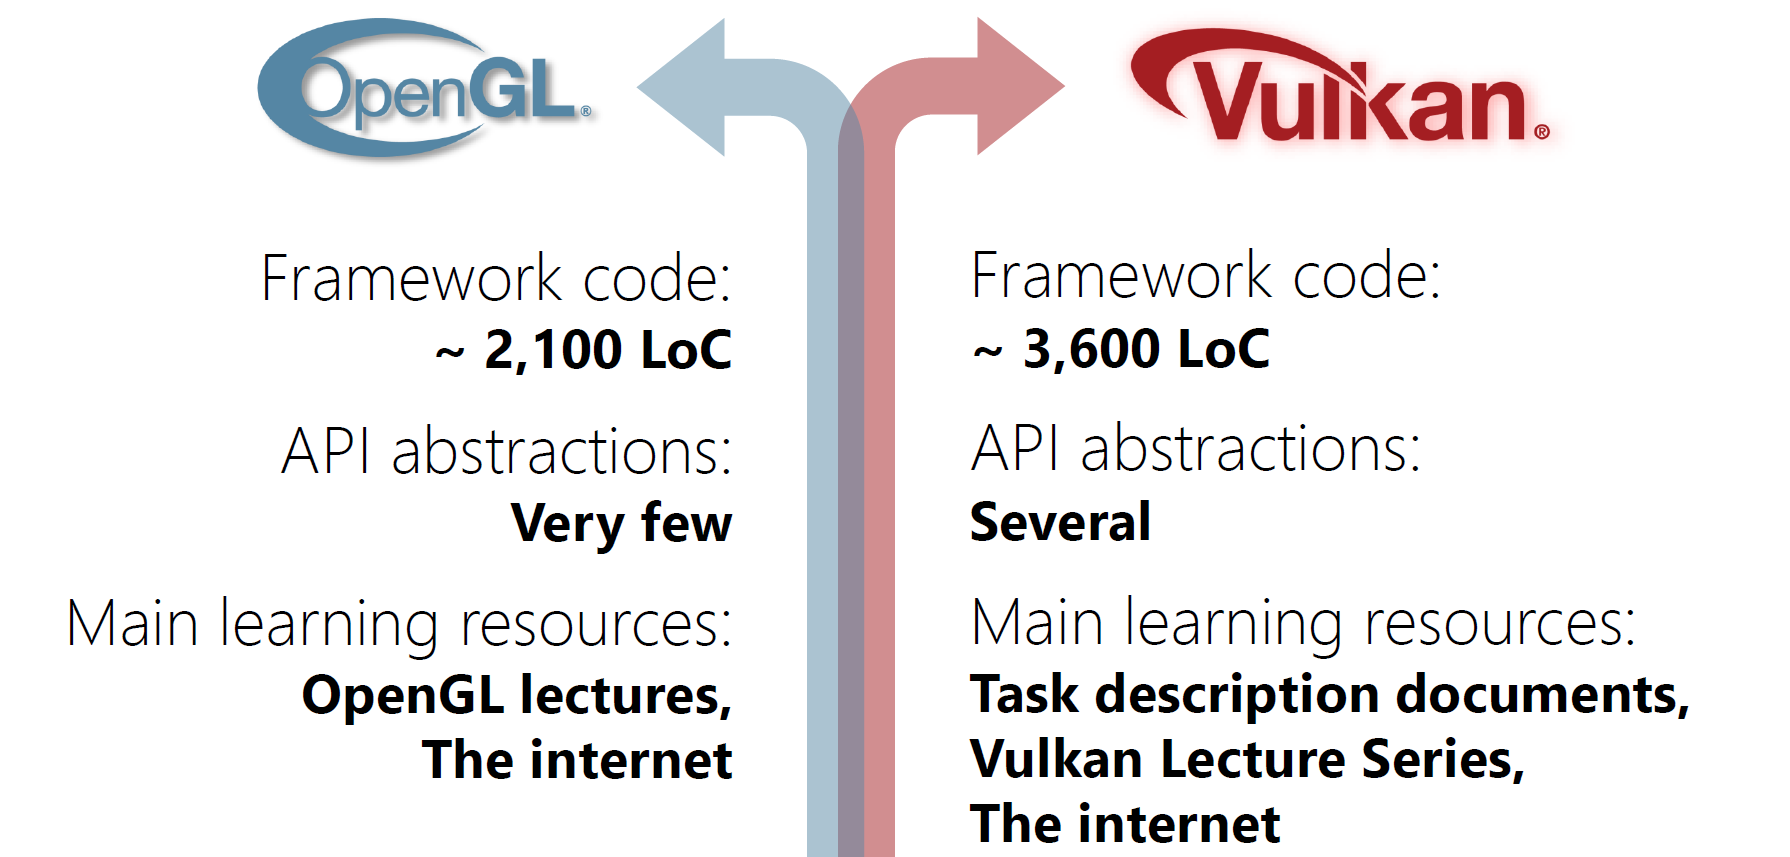 OpenGL framework vs. Vulkan framework in our course